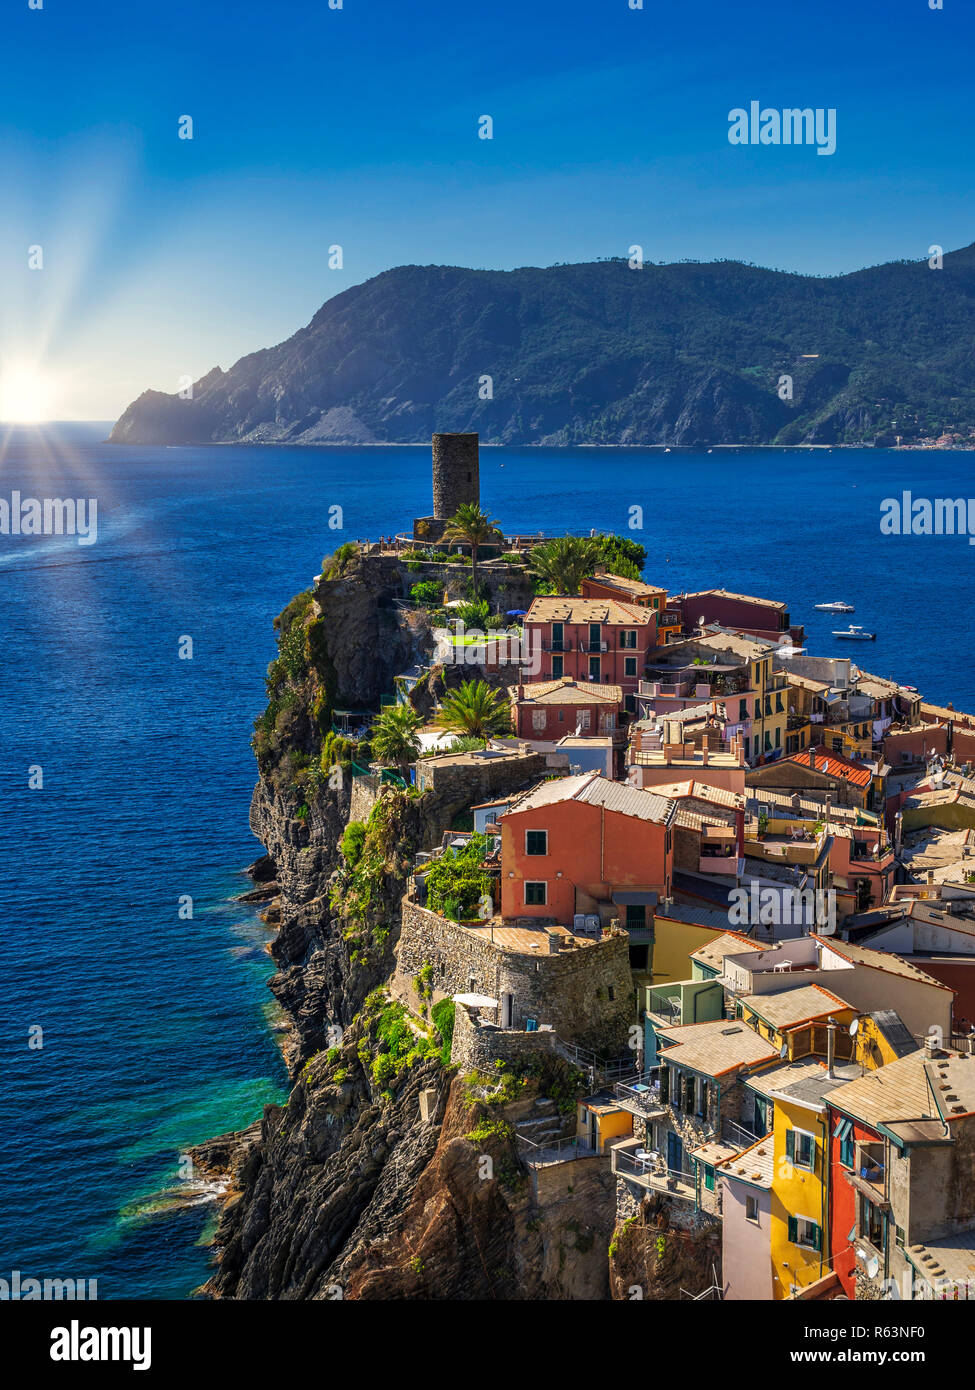 Maisons colorées sur la côte, UNESCO World Heritage Site, Vernazza, Cinque Terre, Ligurie, Italie, Europe Banque D'Images